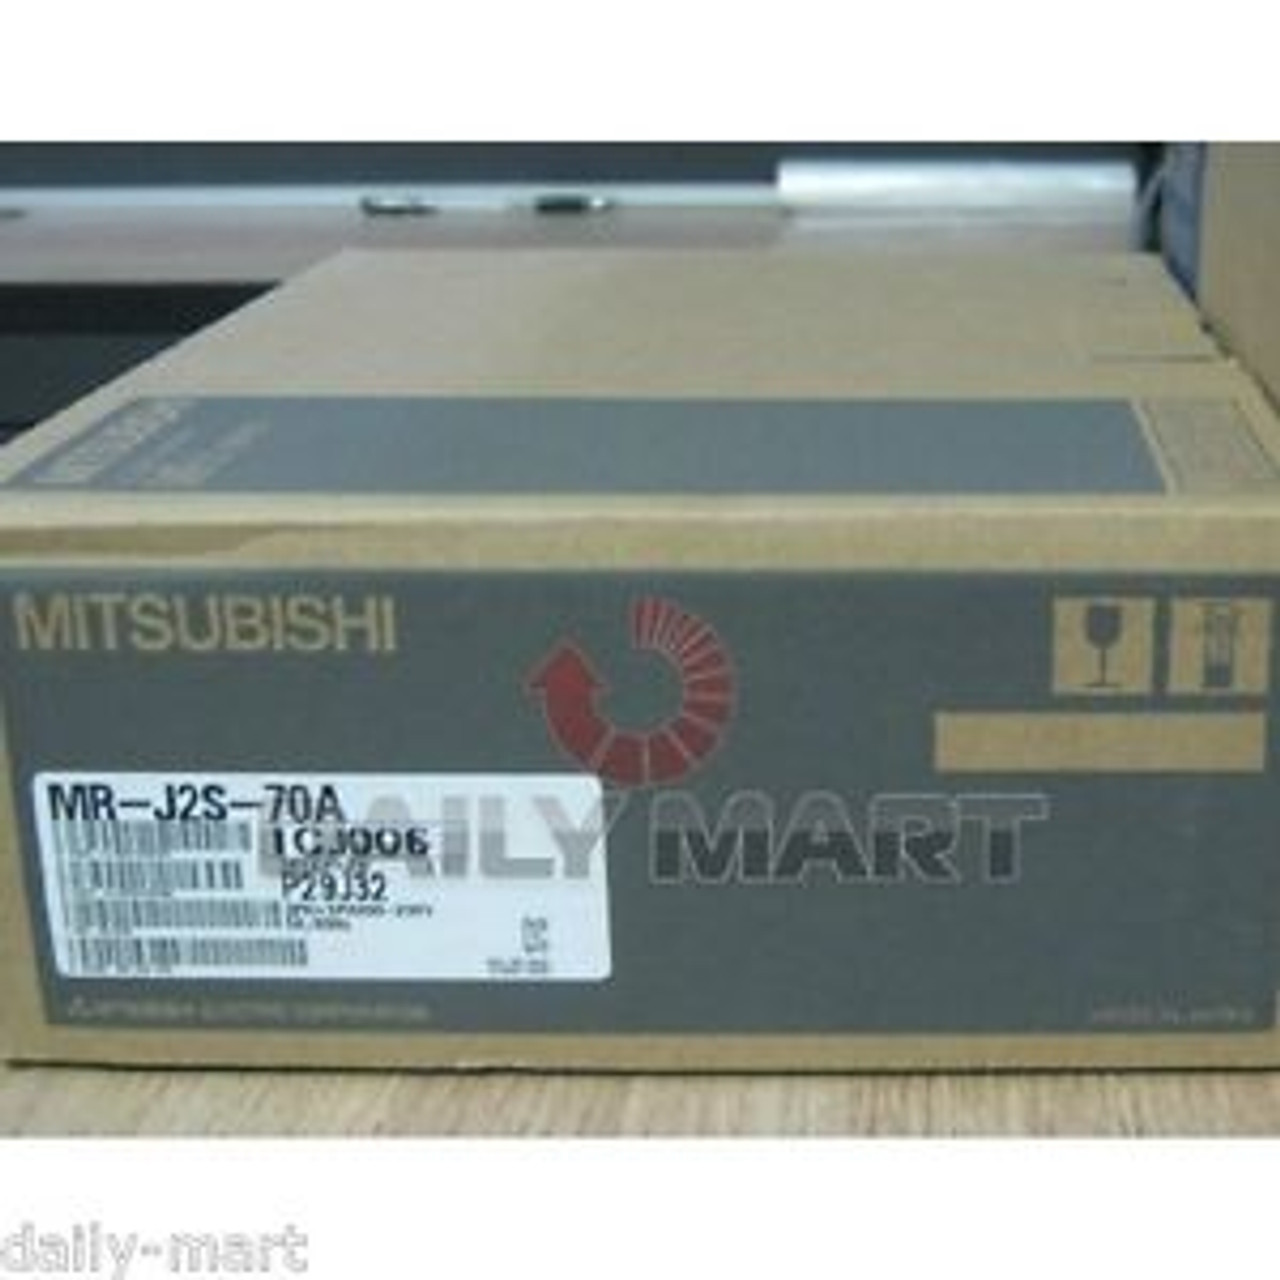 1PC MITSUBISHI AC Servo Driver MR-J2S-70B MRJ2S70B Brand New In Box MR-J2S-70B 